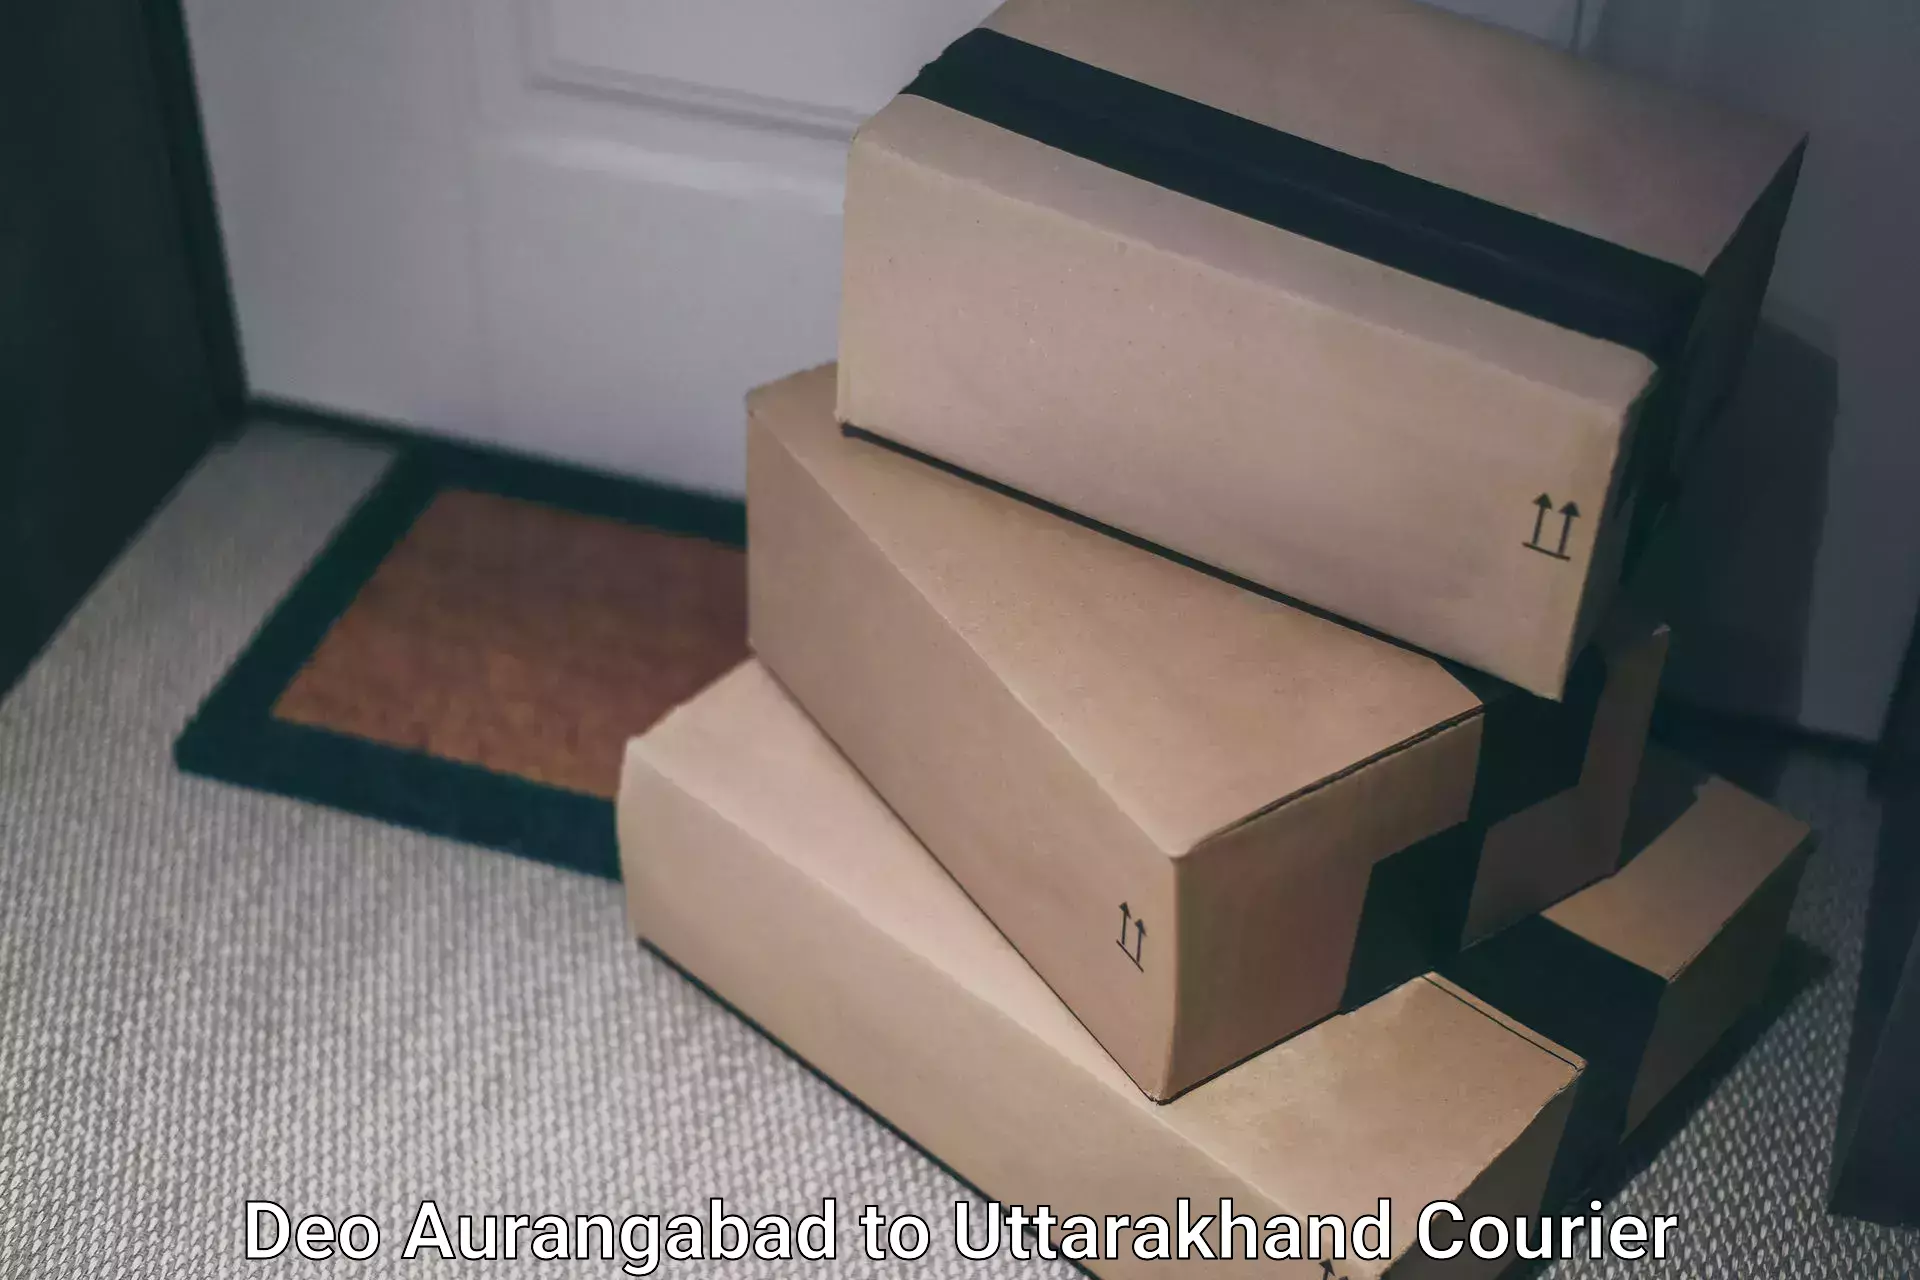 Premium courier solutions Deo Aurangabad to Rudrapur